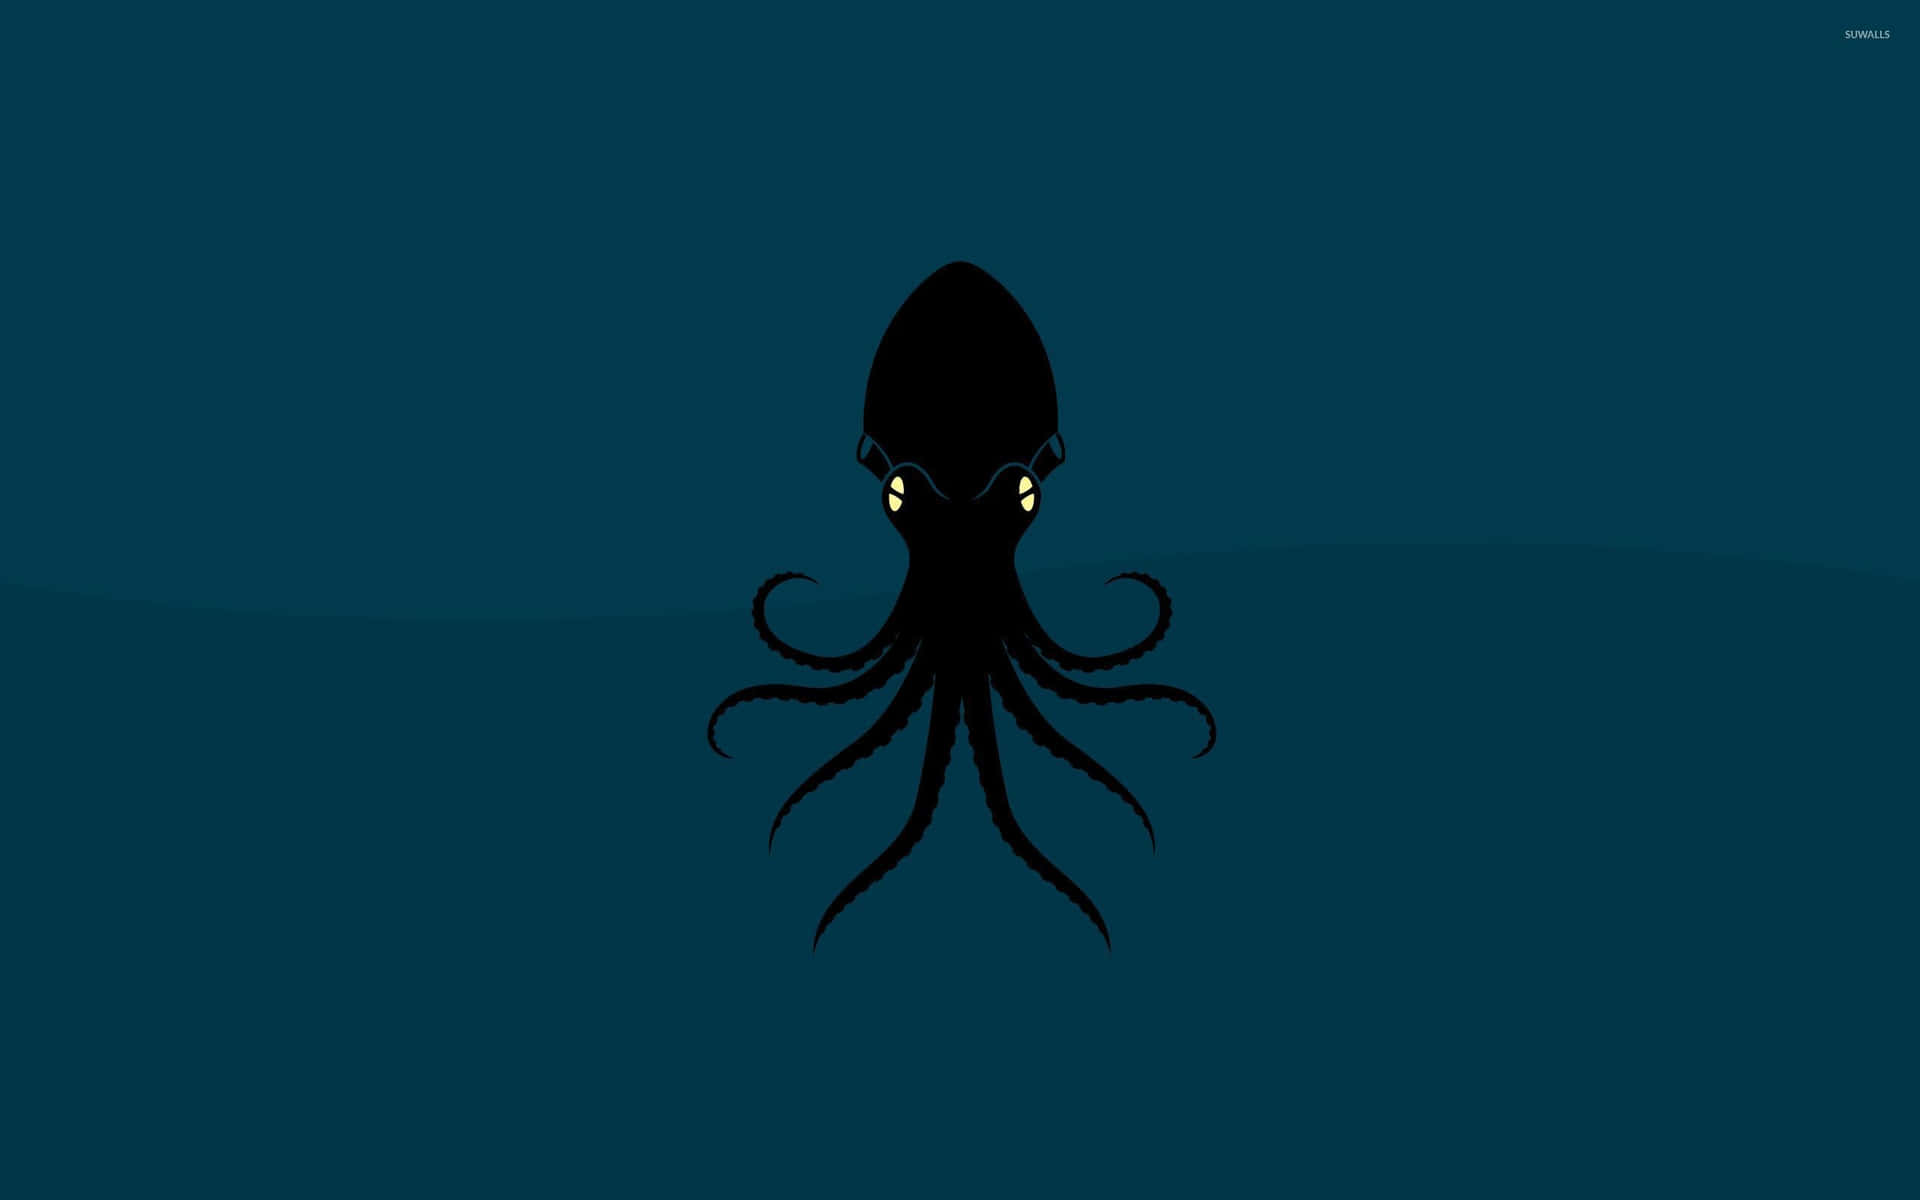 Giant Squid in the Ocean